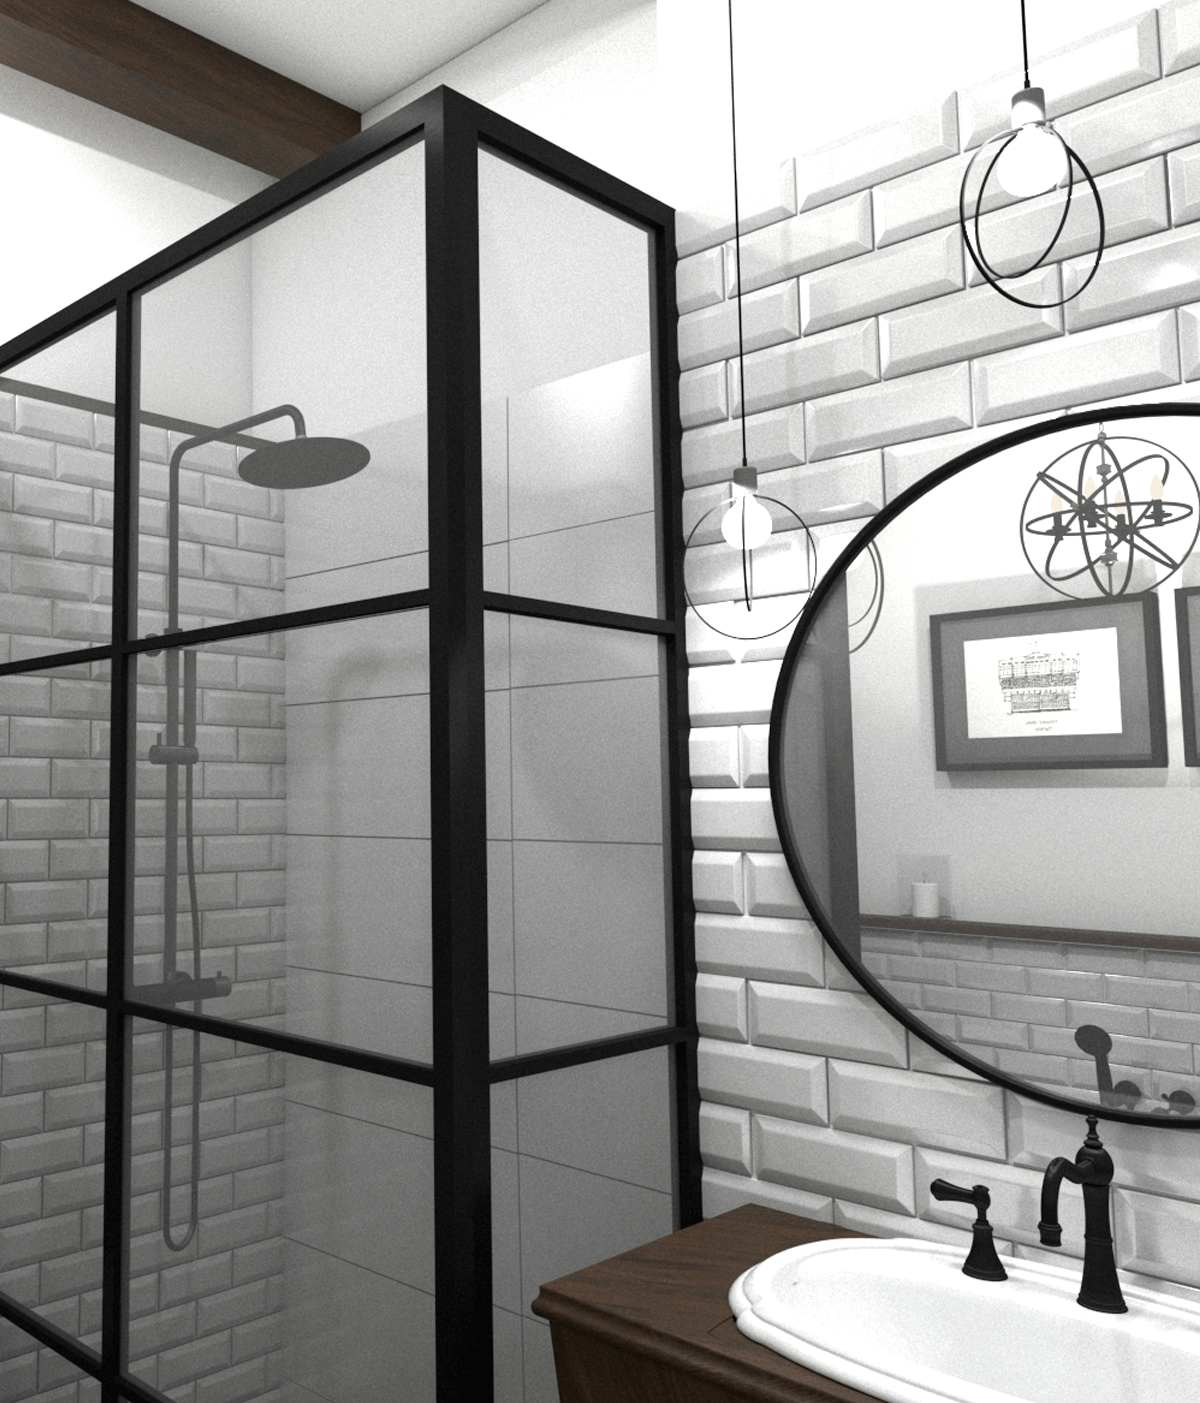 Badezimmer im Vintage-Look in schwarz-weiß eingerichtet